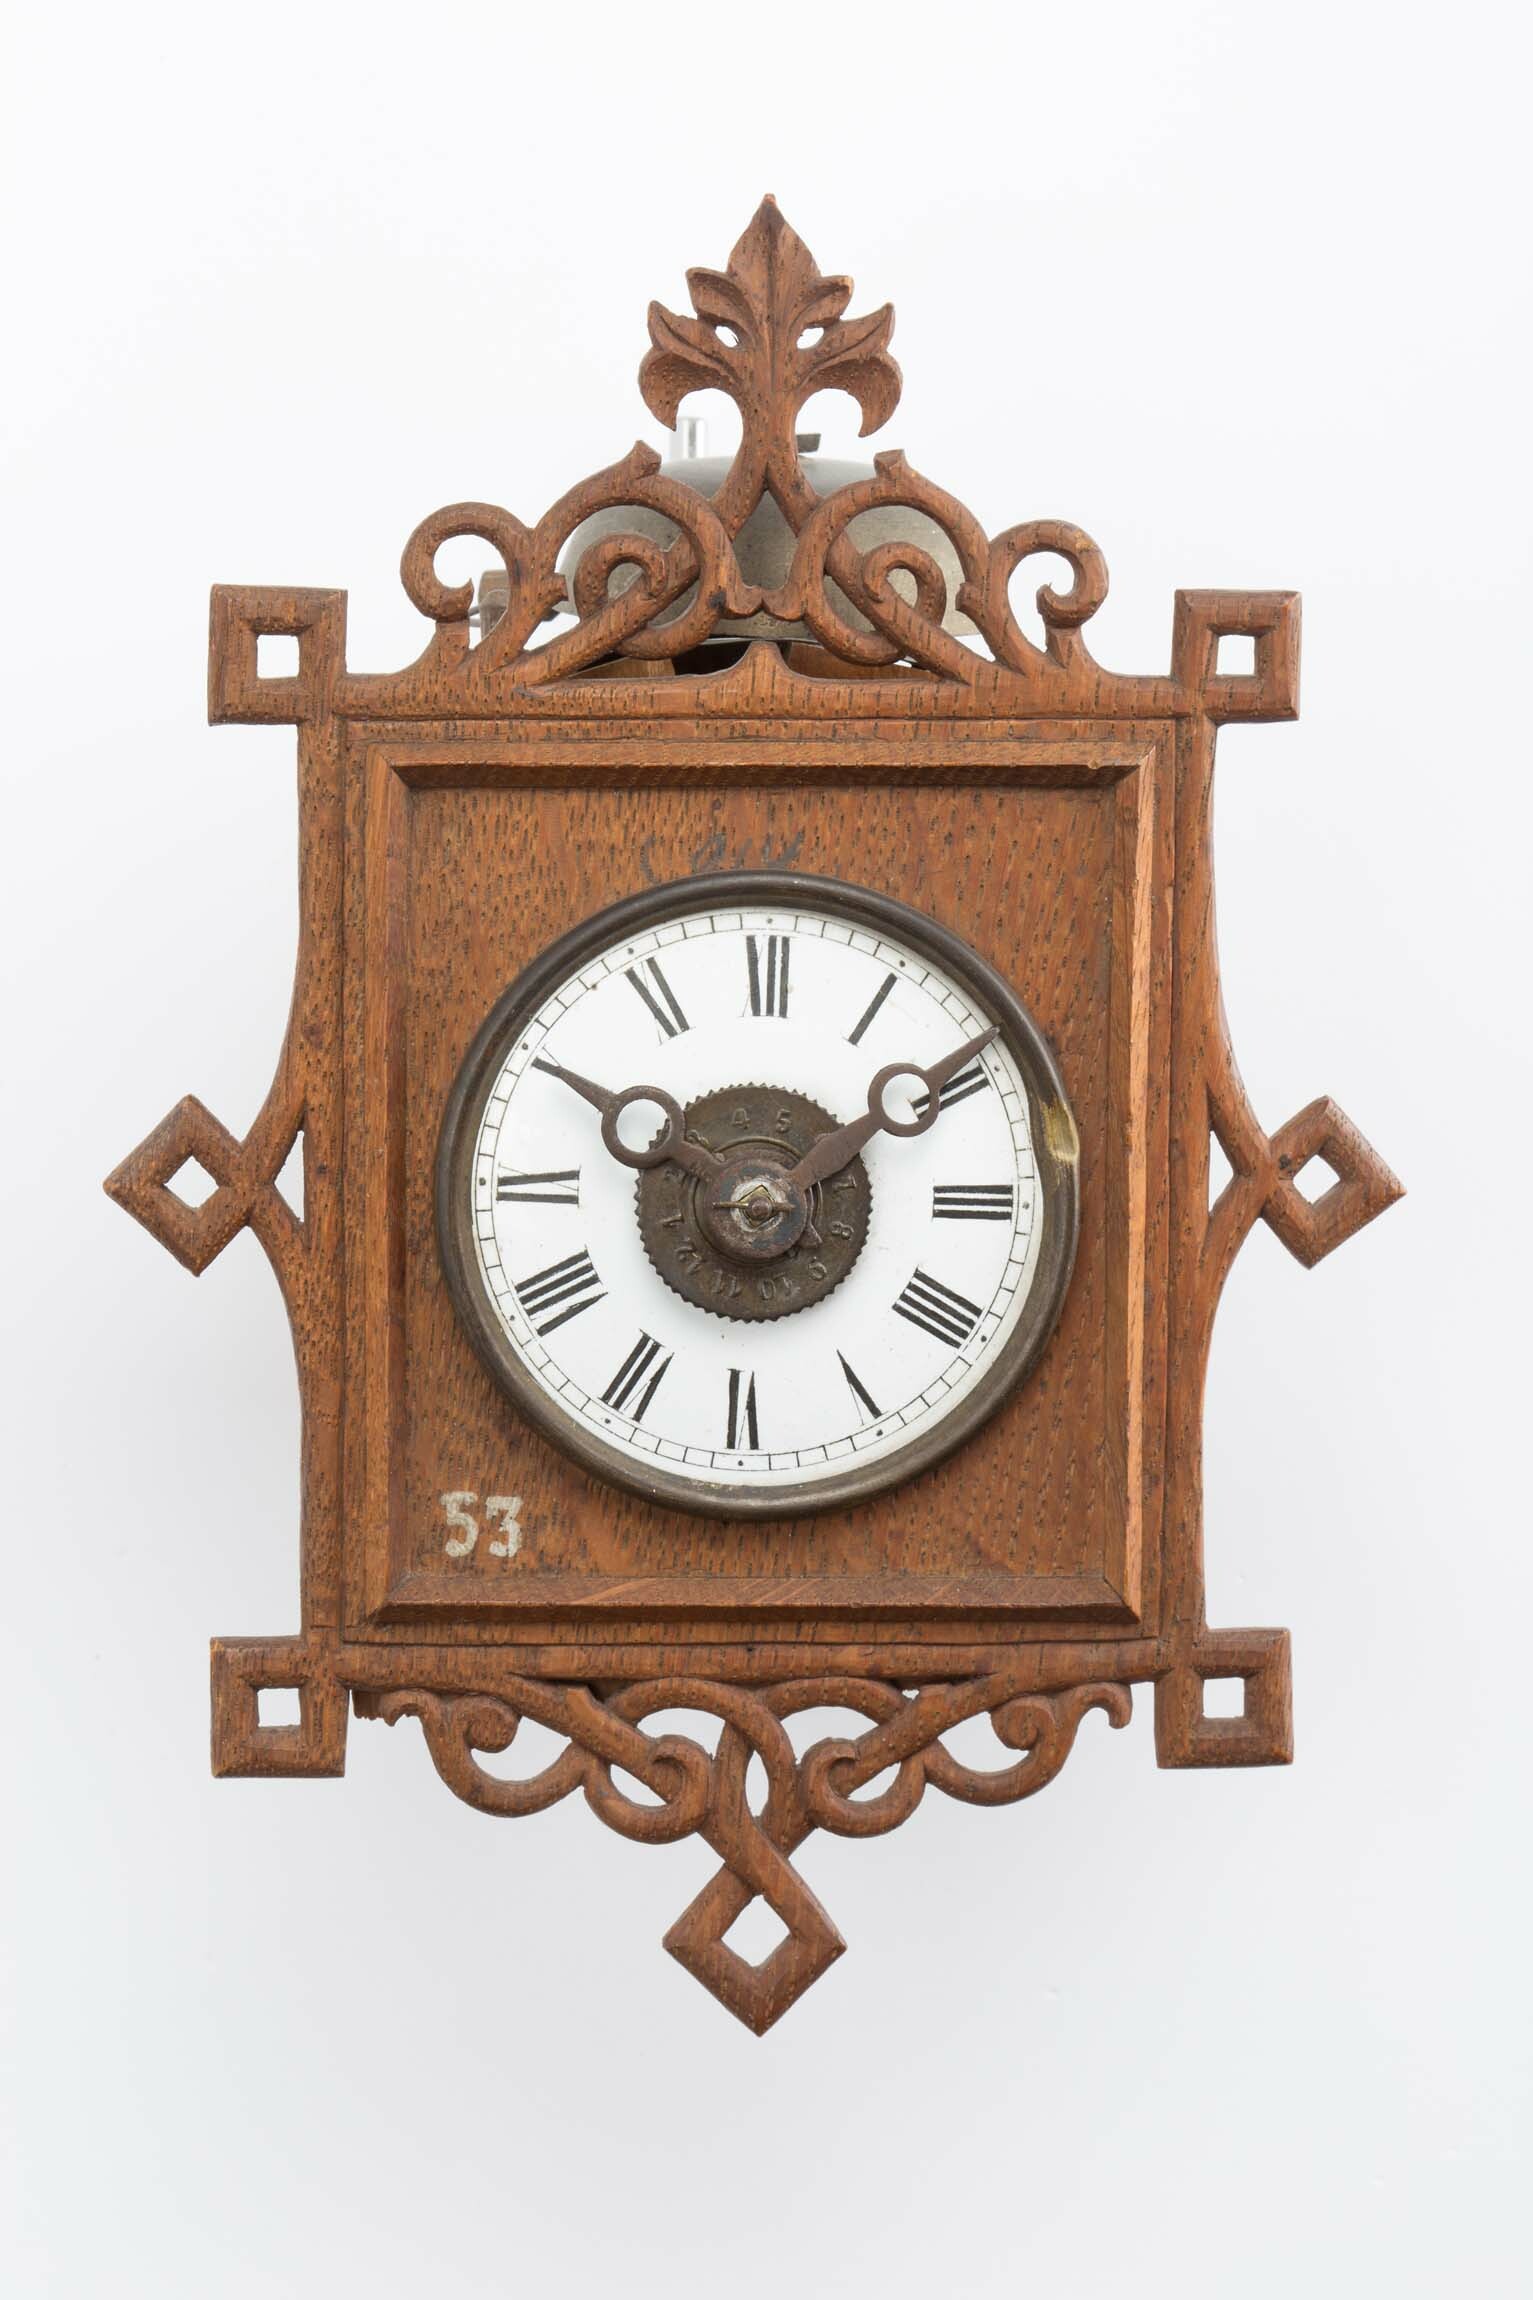 Jockeleuhr, A. Rohrer, Furtwangen, 1860 (Deutsches Uhrenmuseum CC BY-SA)